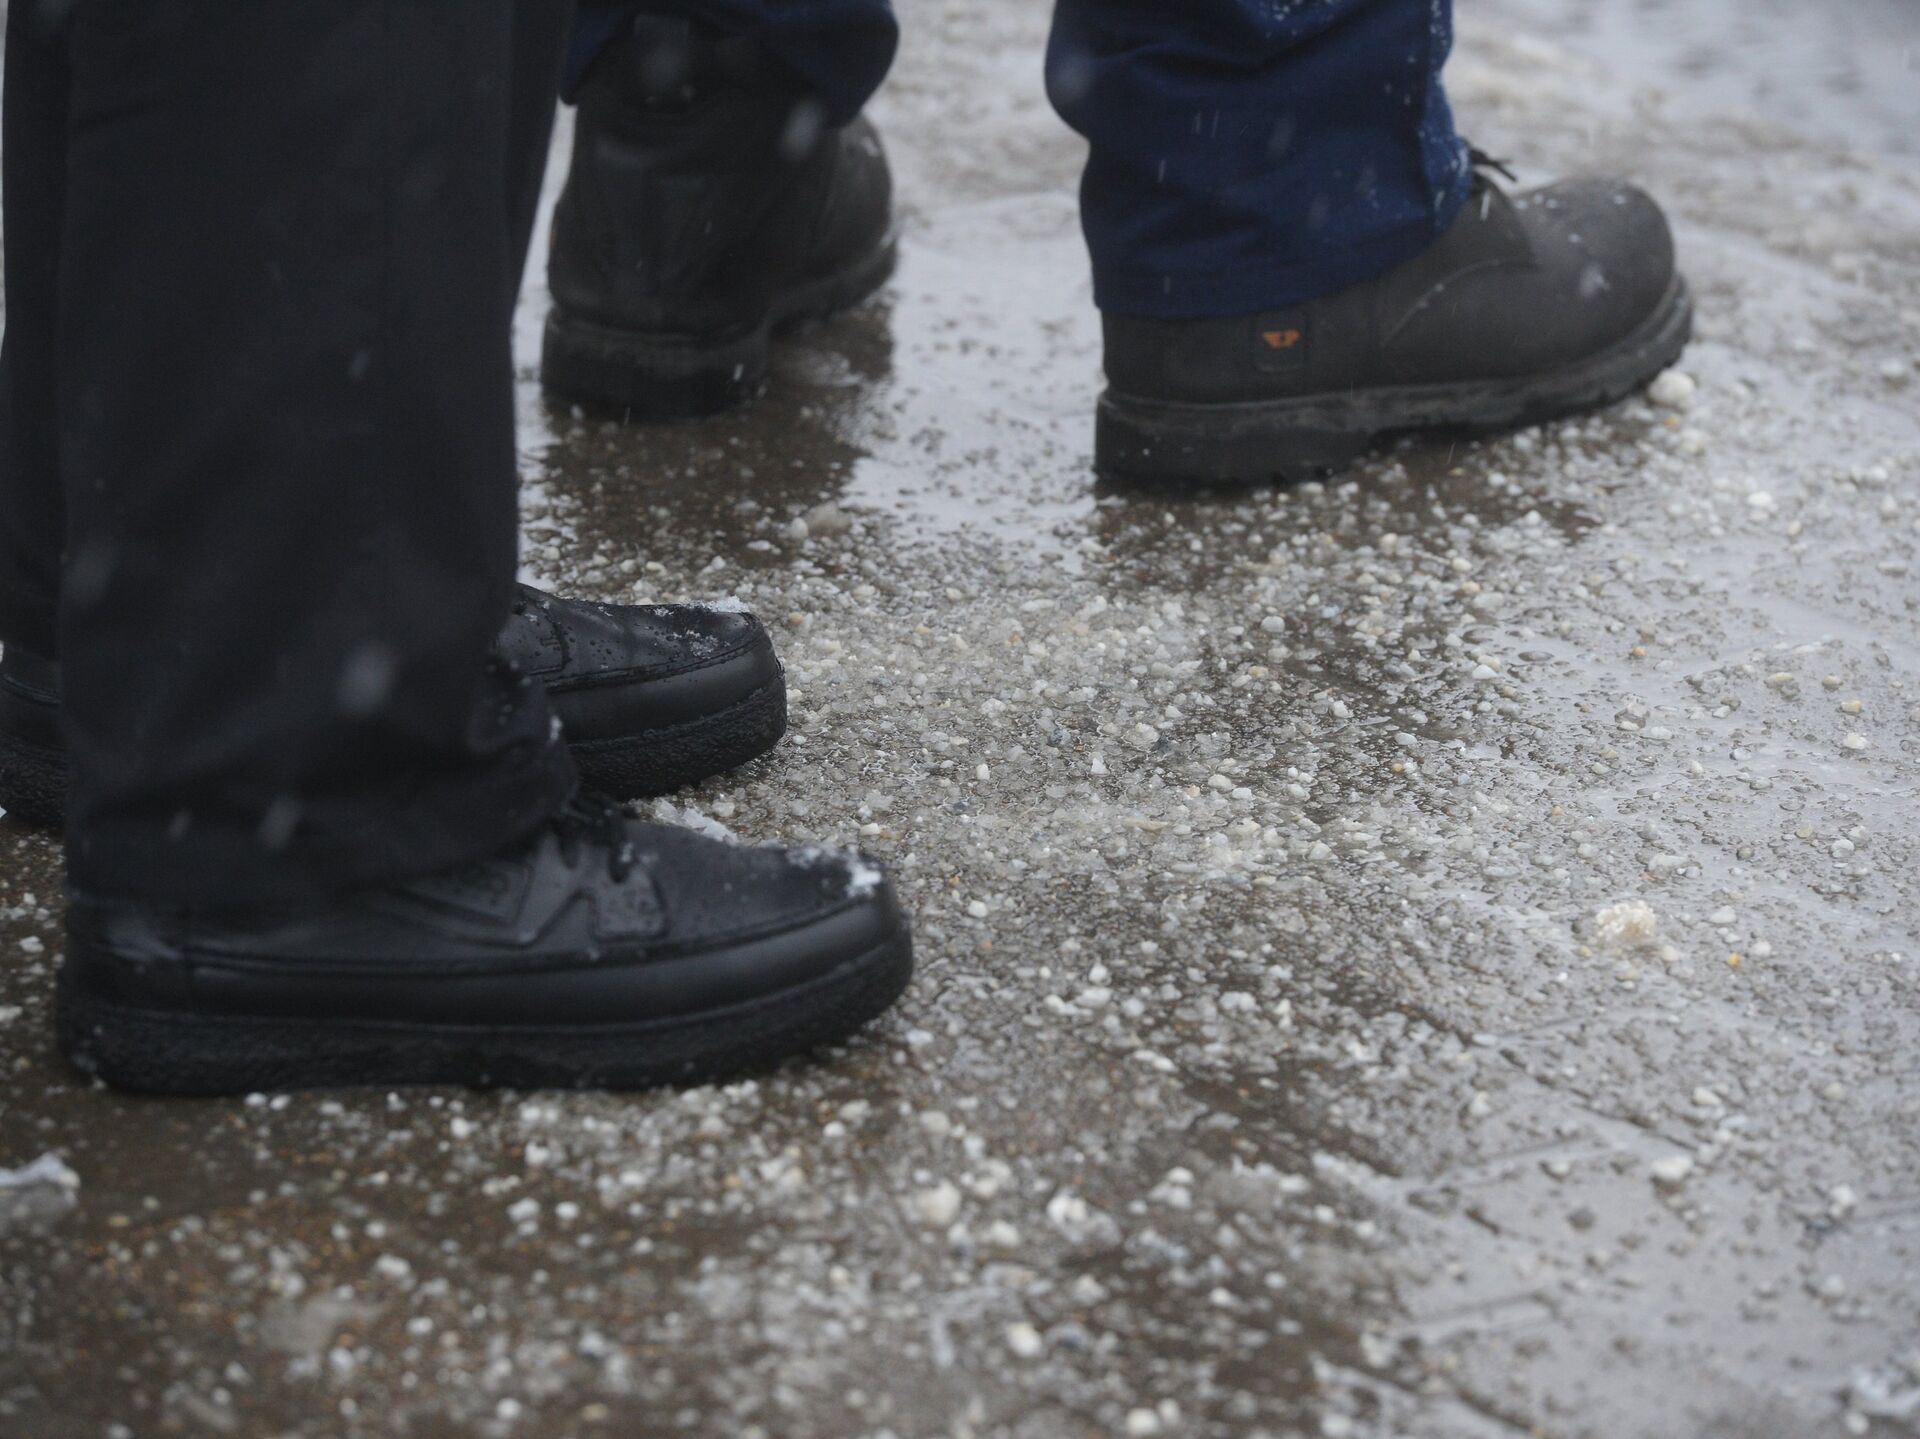 Реагенты зимой. Противо галоледные реагенты. Противогололедные ботинки. Влияние реагентов на обувь. Антигололедные реагенты газон.